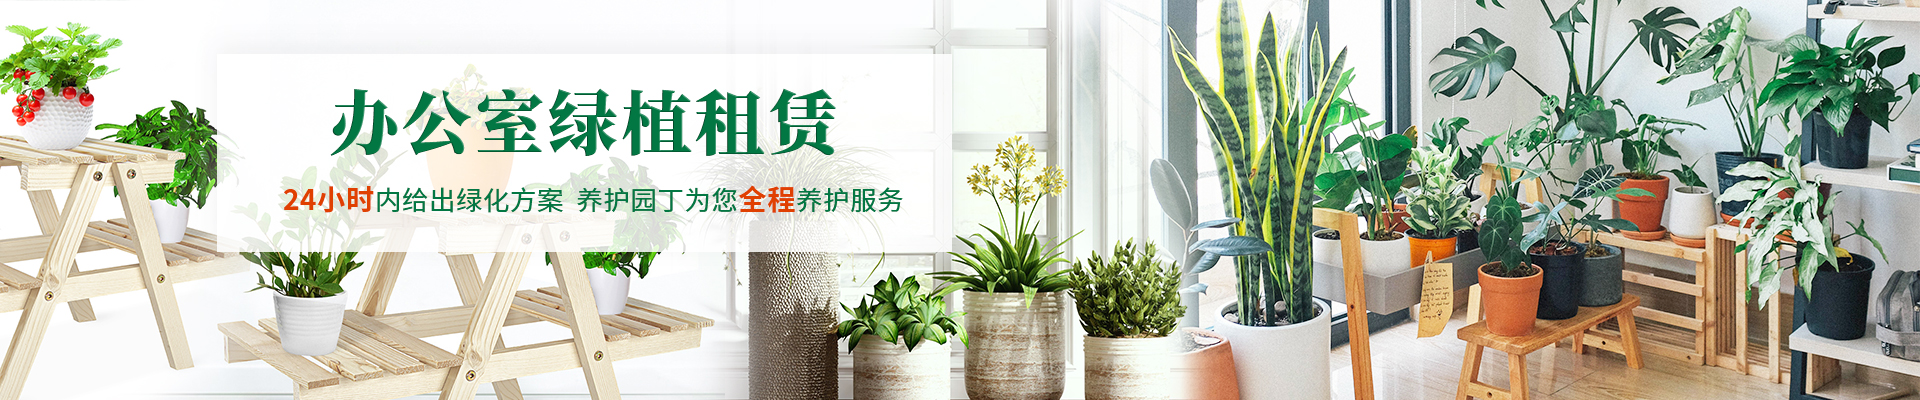 重庆办公室植物租赁